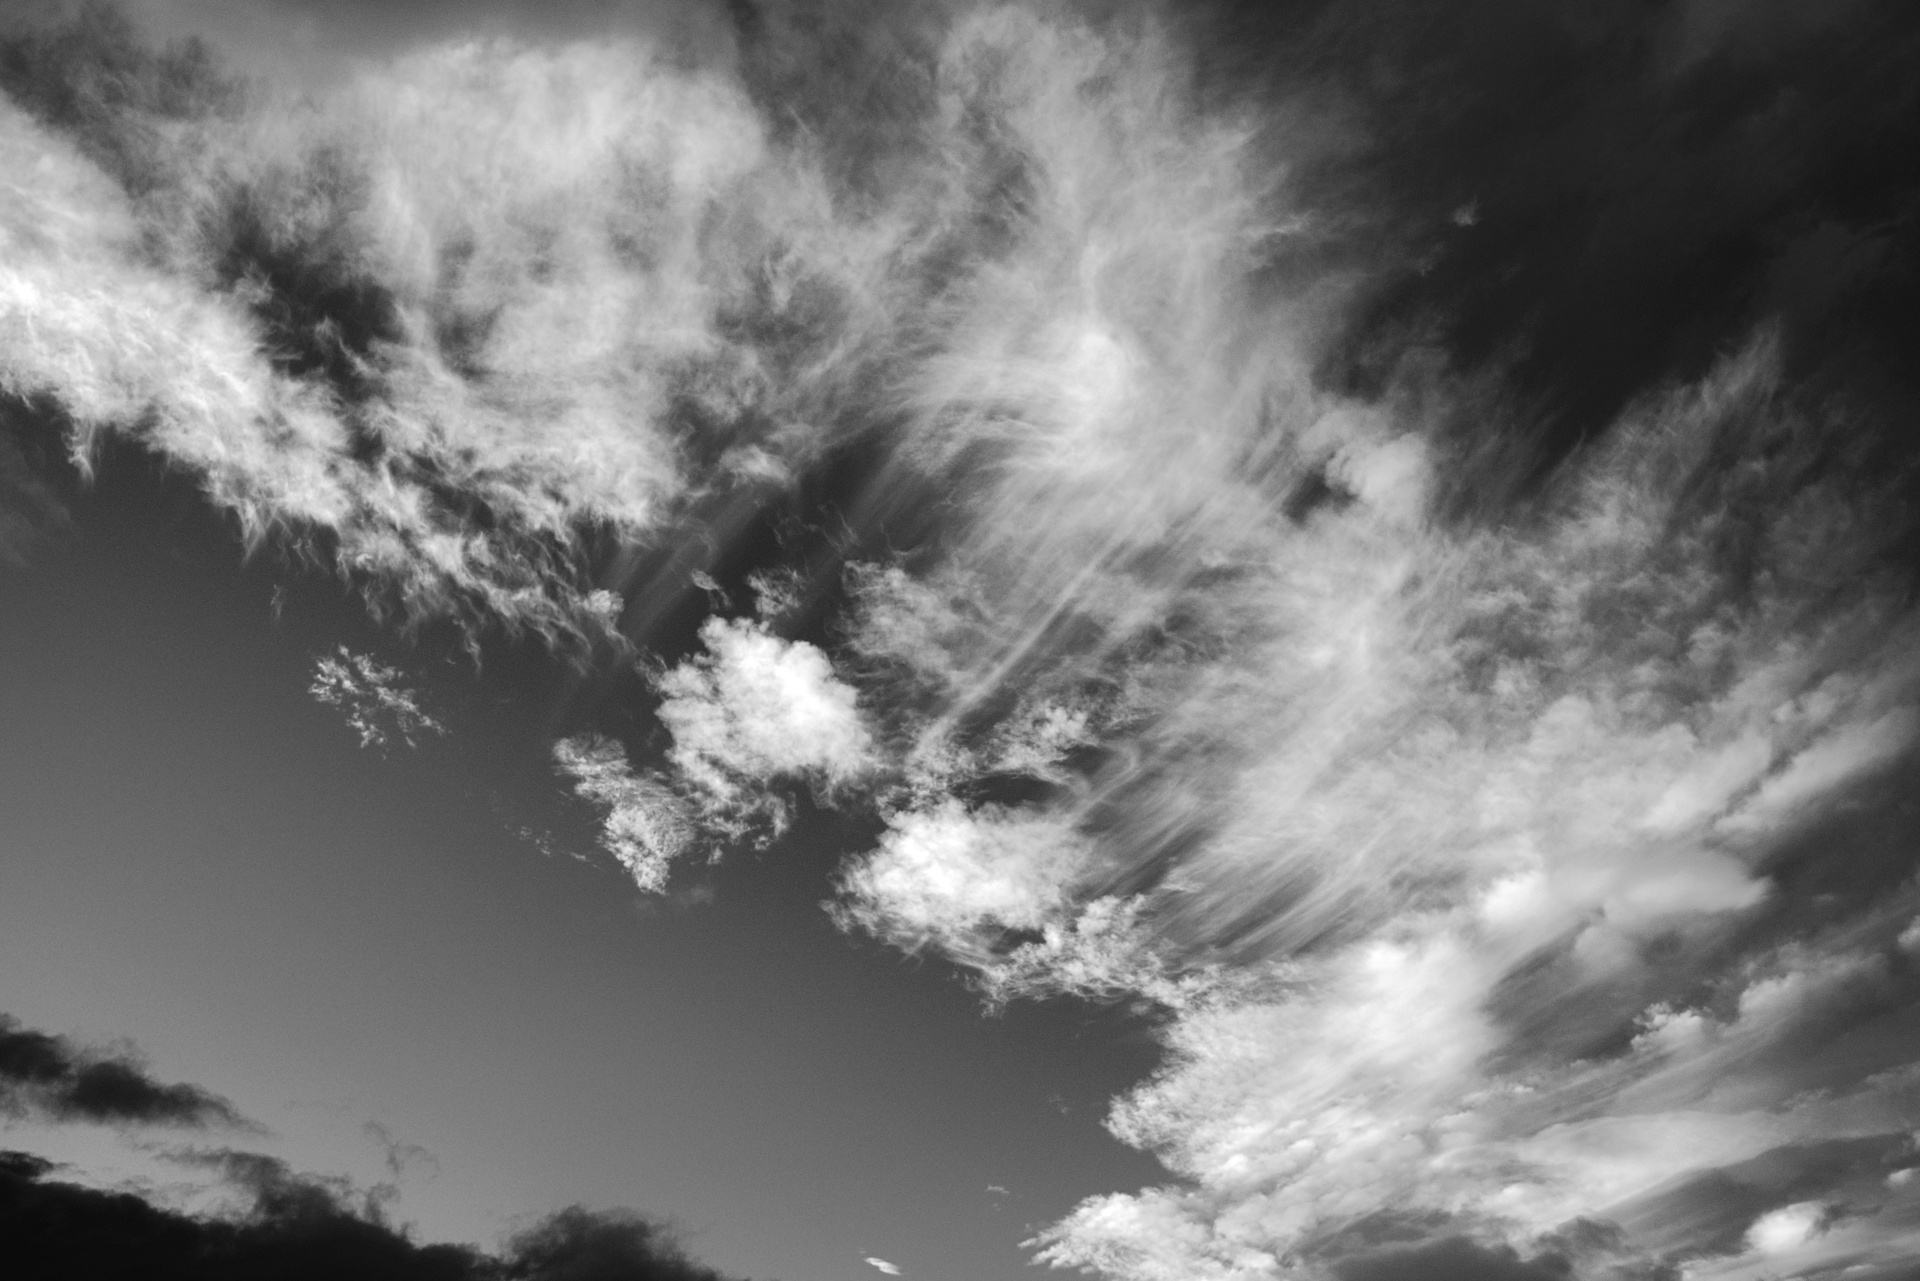 Wispy Cloud Patterns